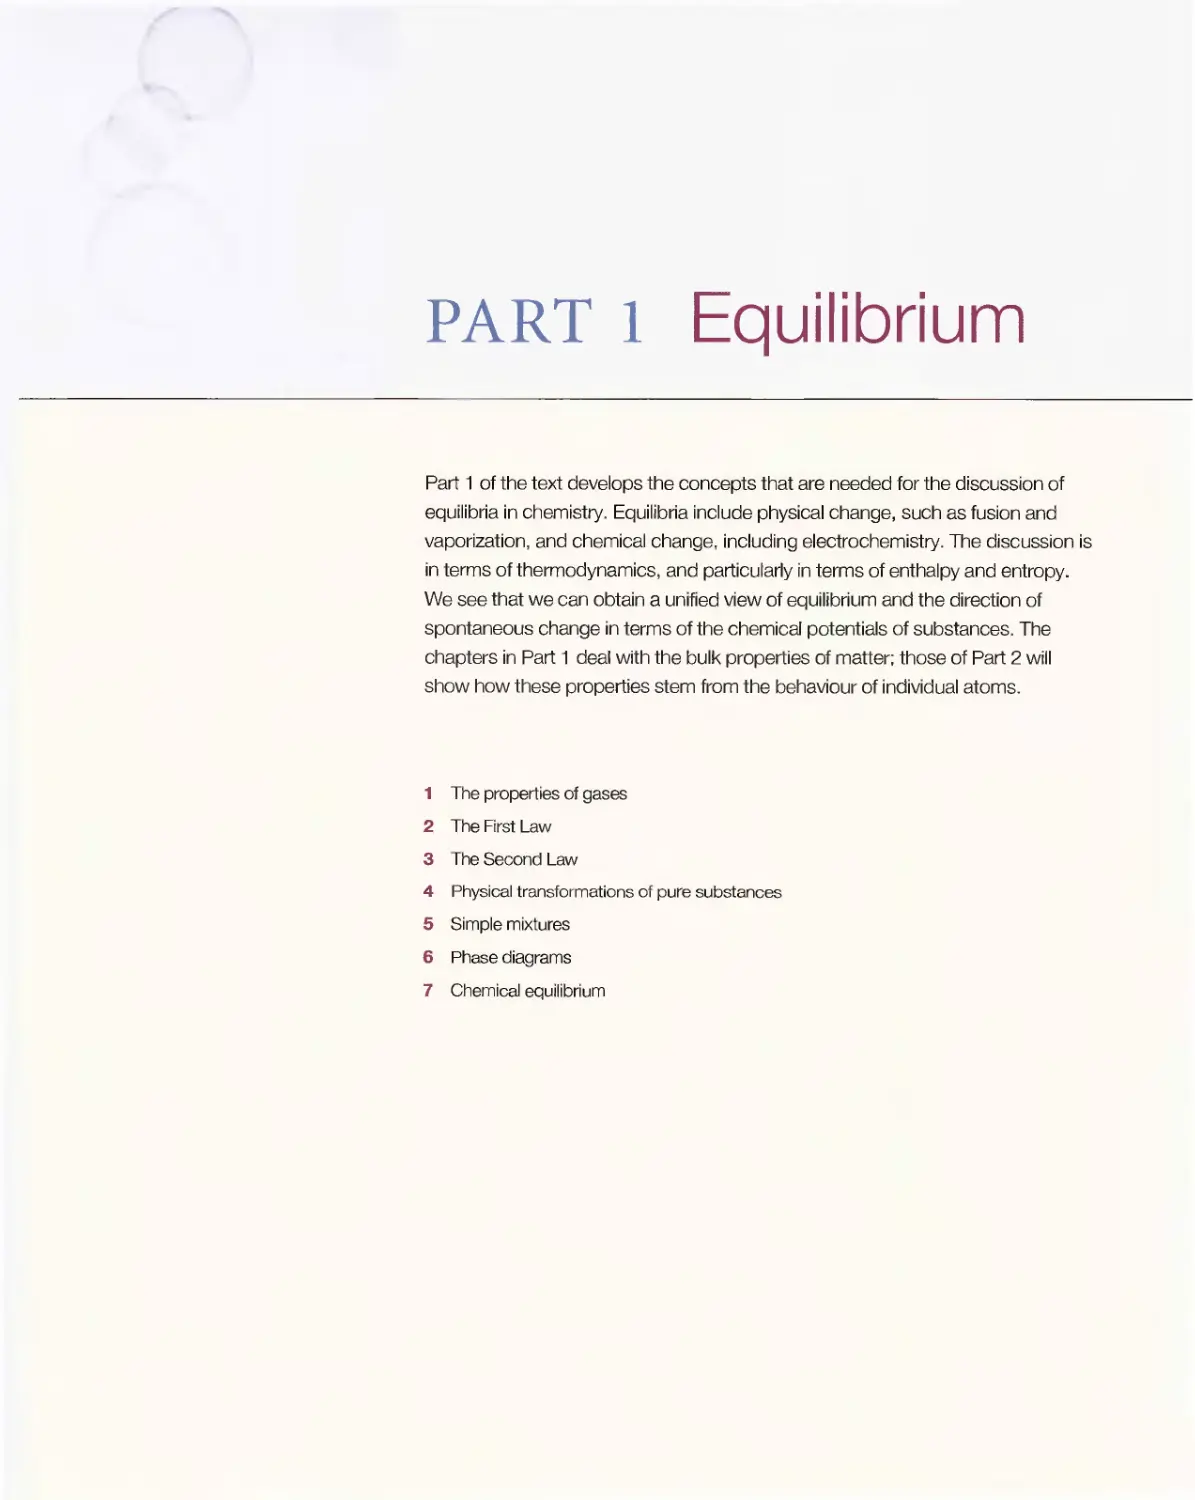 Part 1 - Equilibrium